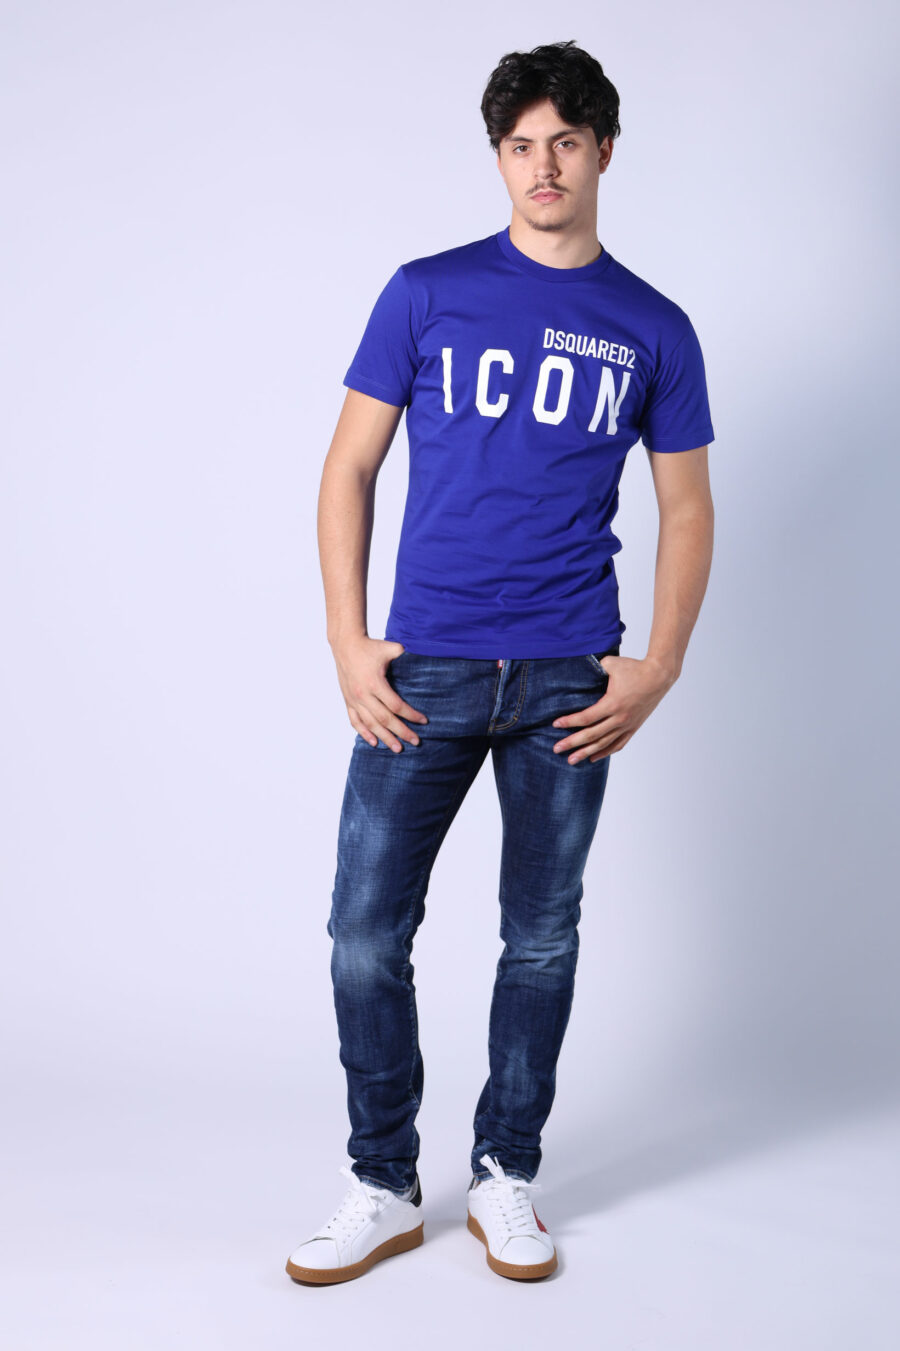 T-shirt bleu électrique avec maxilogo "icon" blanc - Untitled Catalog 05398